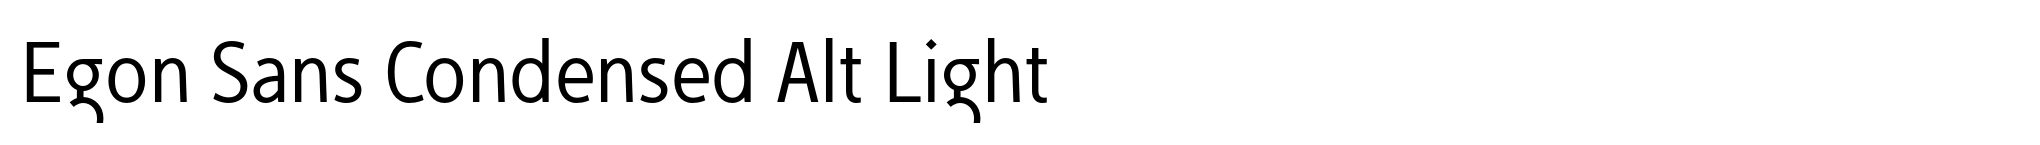 Egon Sans Condensed Alt Light image